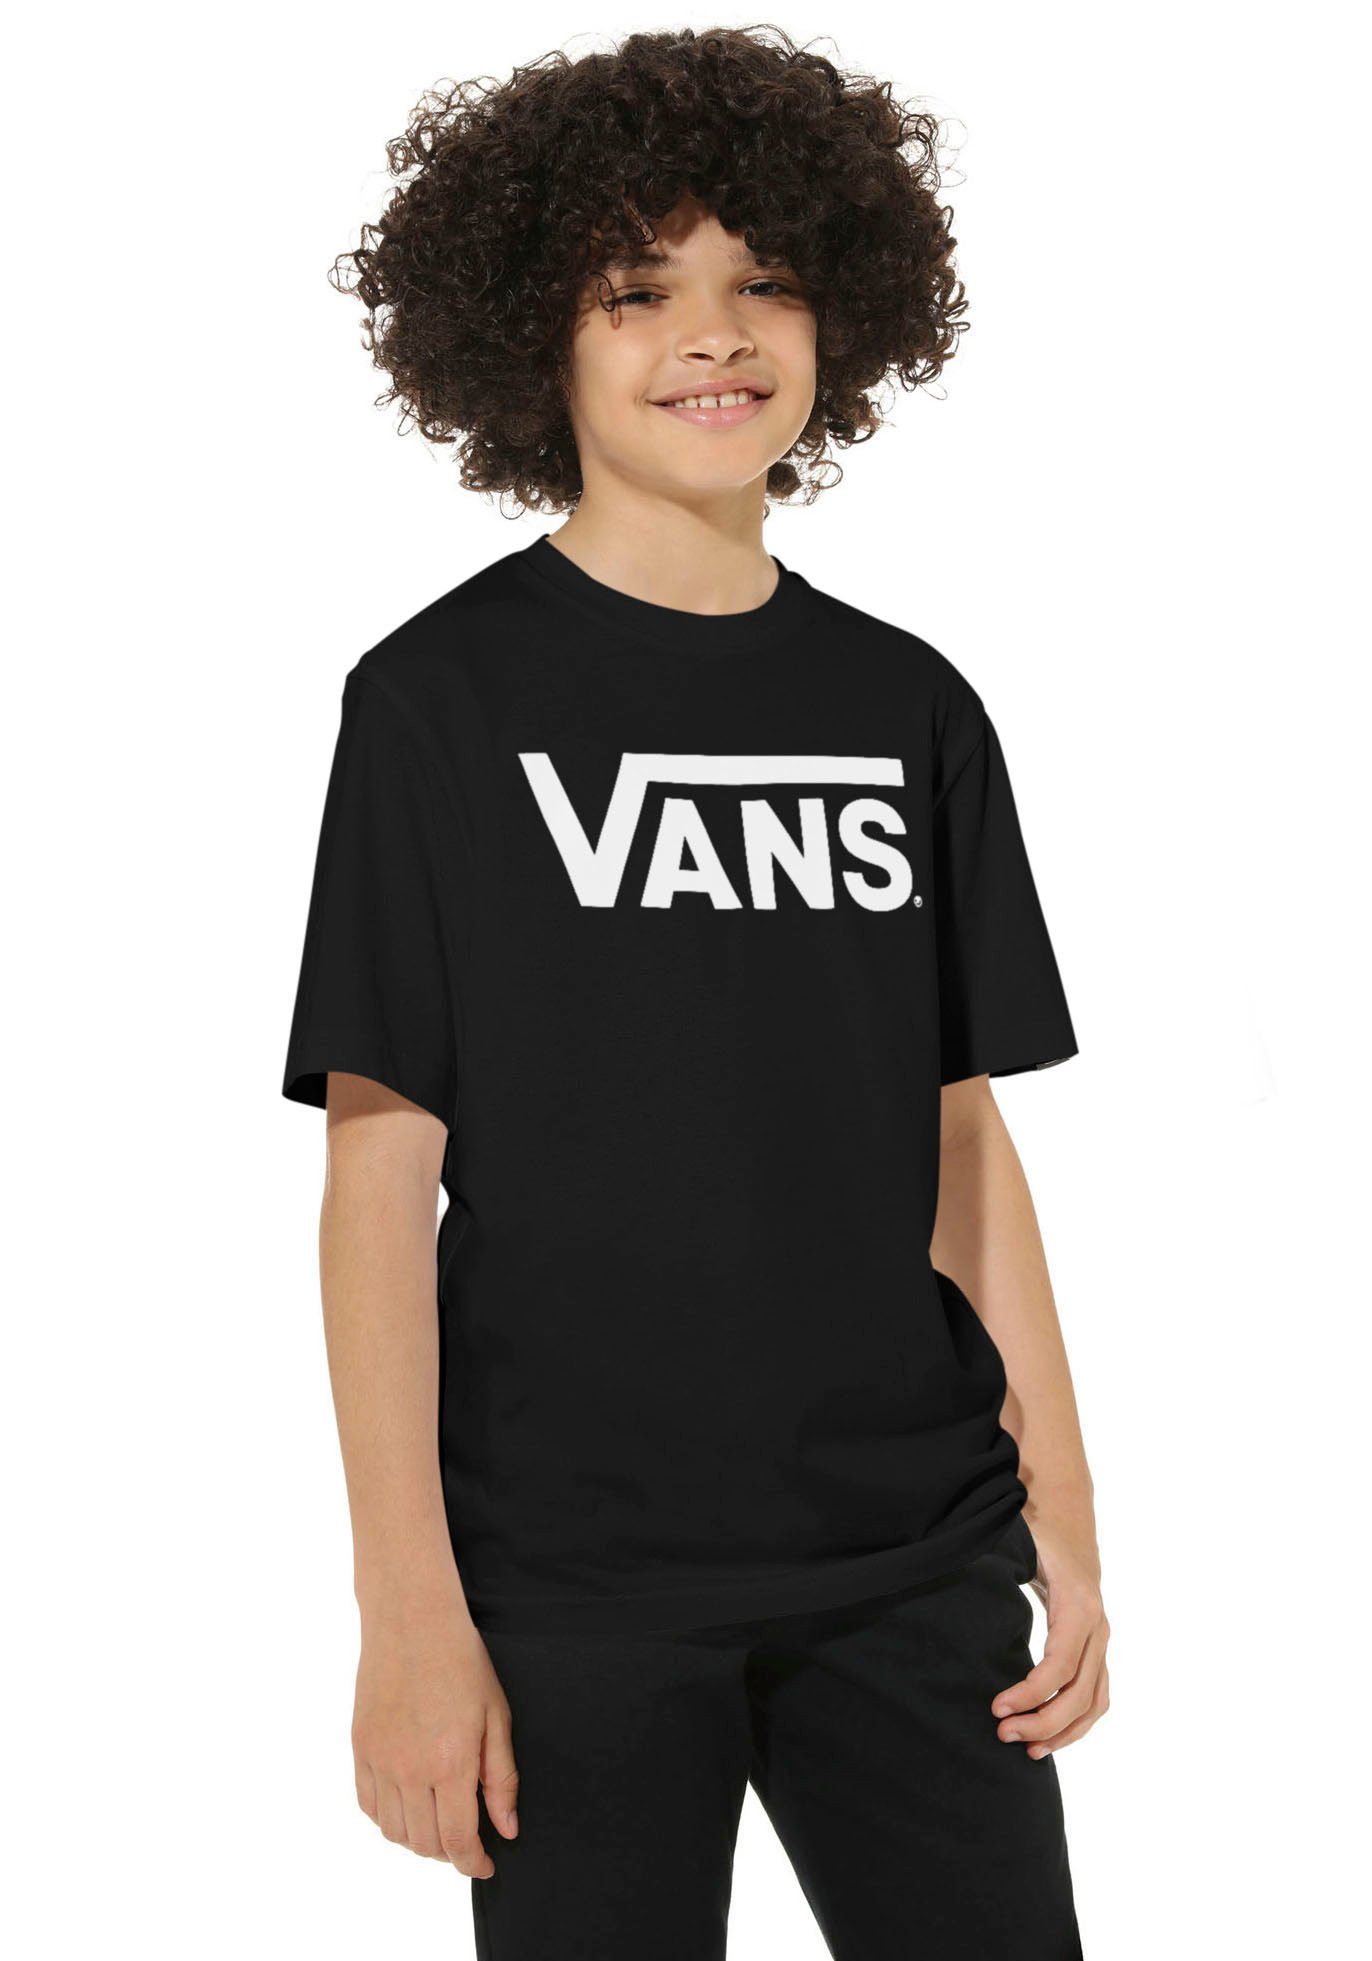 Vans T-Shirt VANS CLASSIC BOYS schwarz